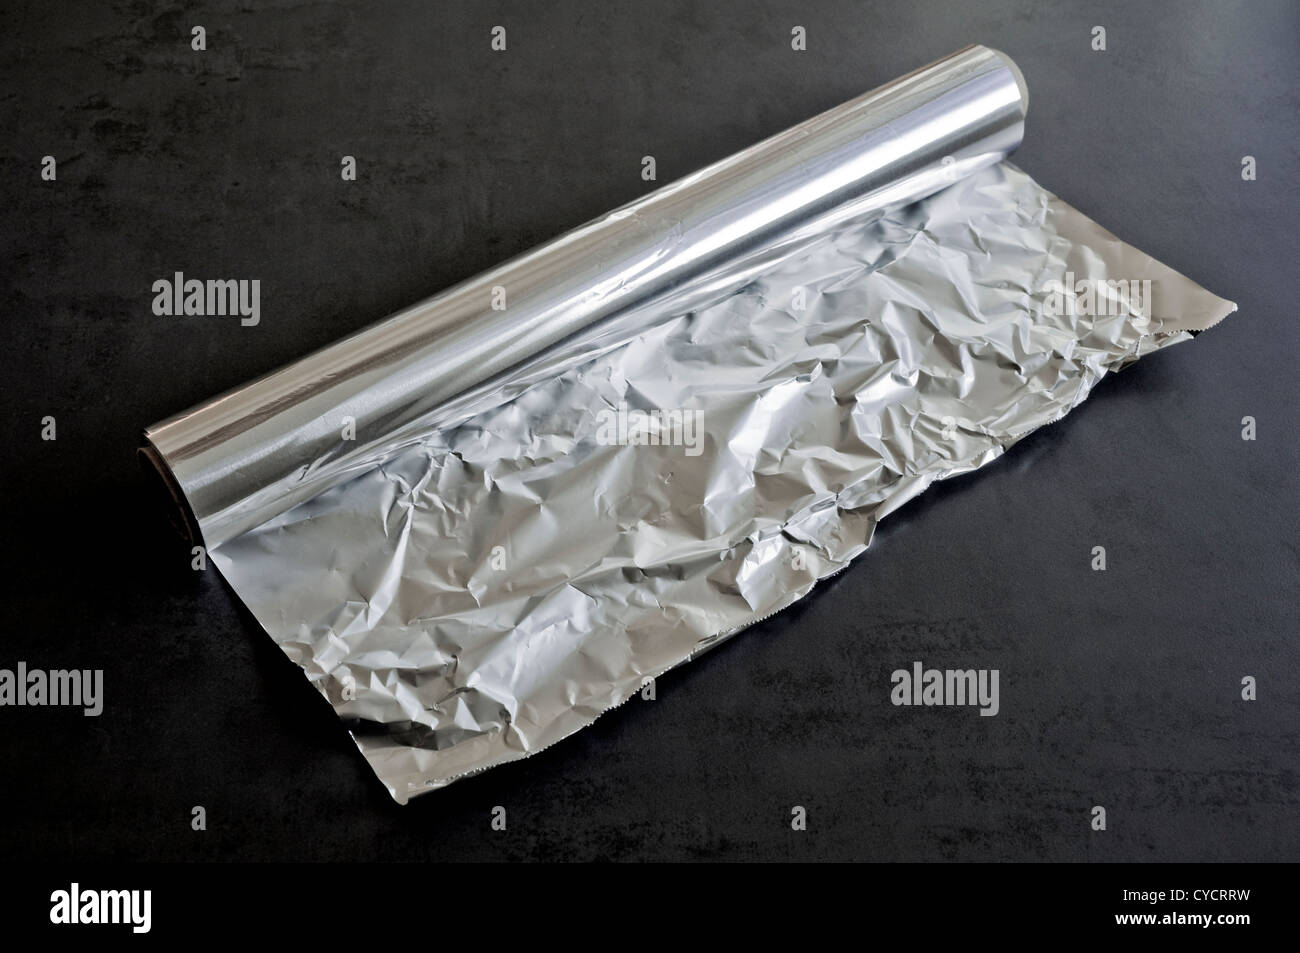 Lamina di alluminio / un rotolo di carta stagnola - spesso